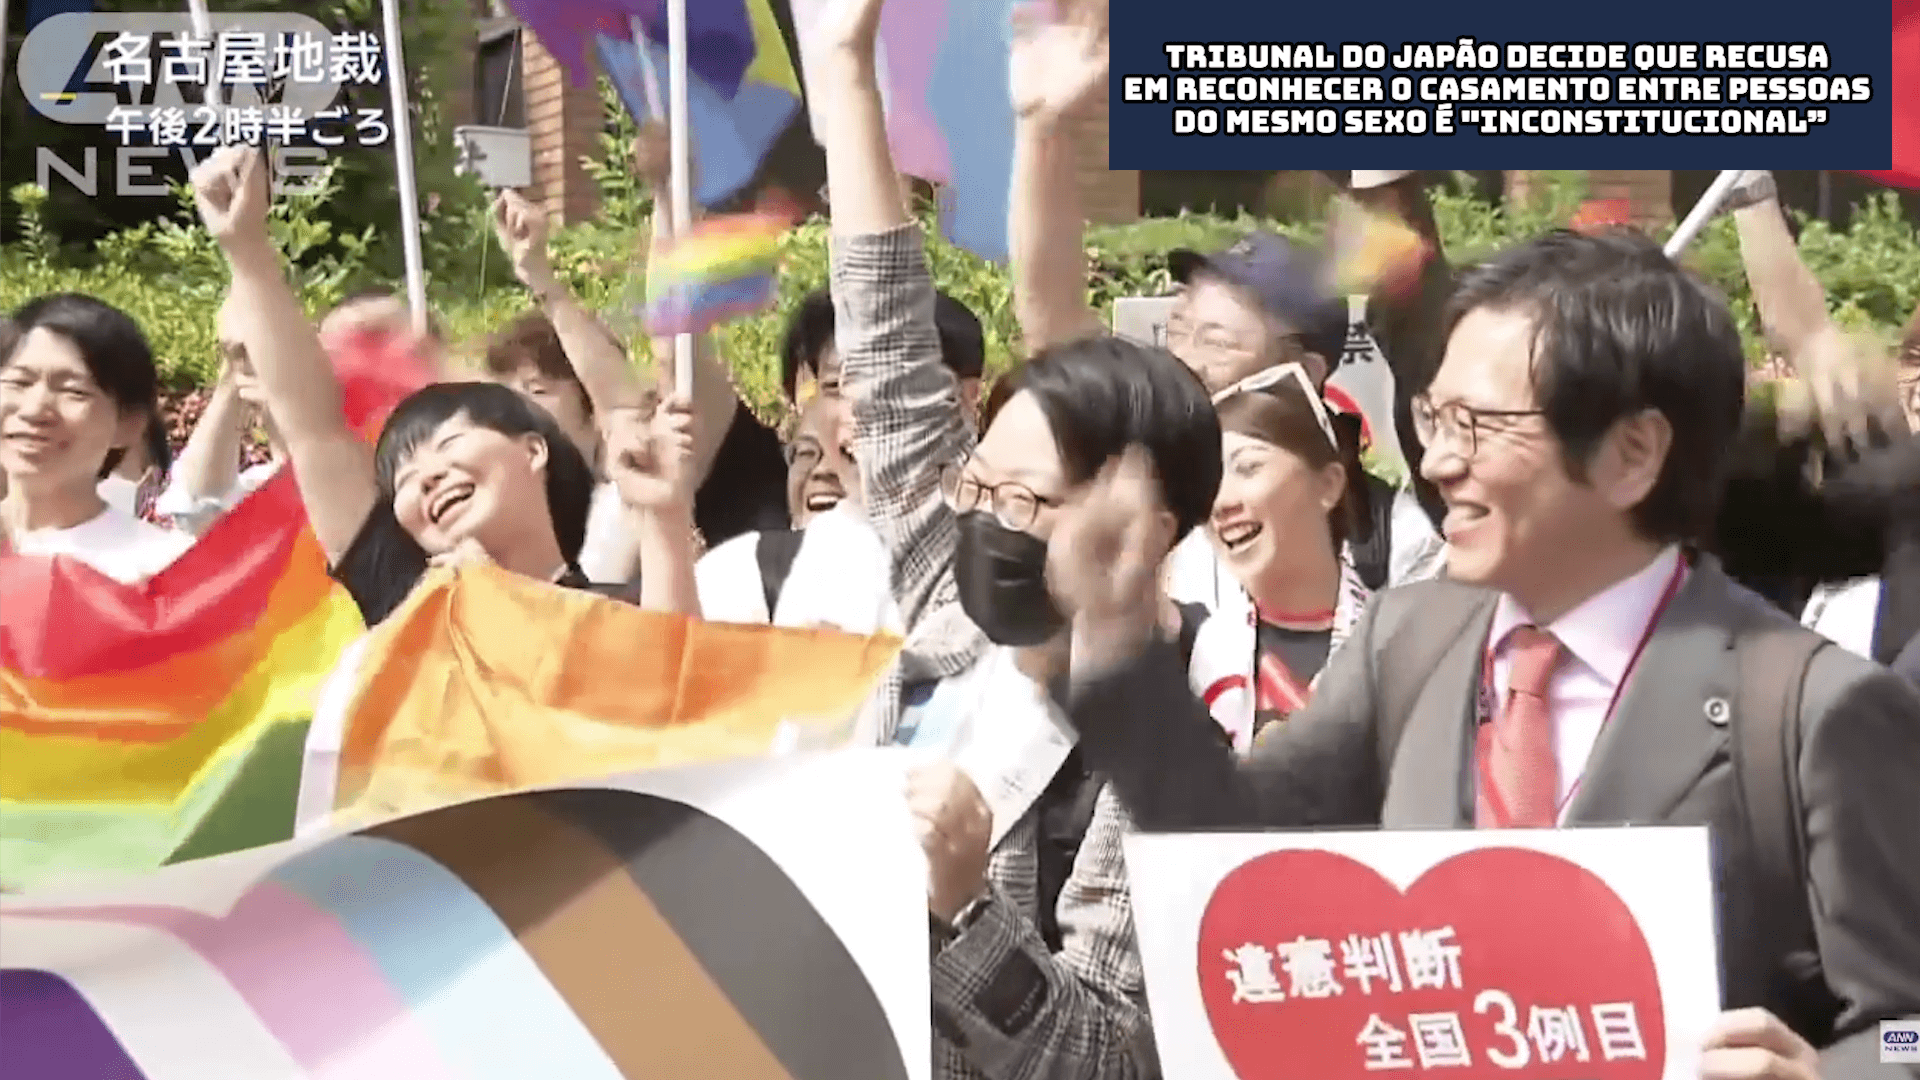 Tribunal do Japão decide que recusa em reconhecer o casamento entre pessoas do mesmo sexo é “inconstitucional”